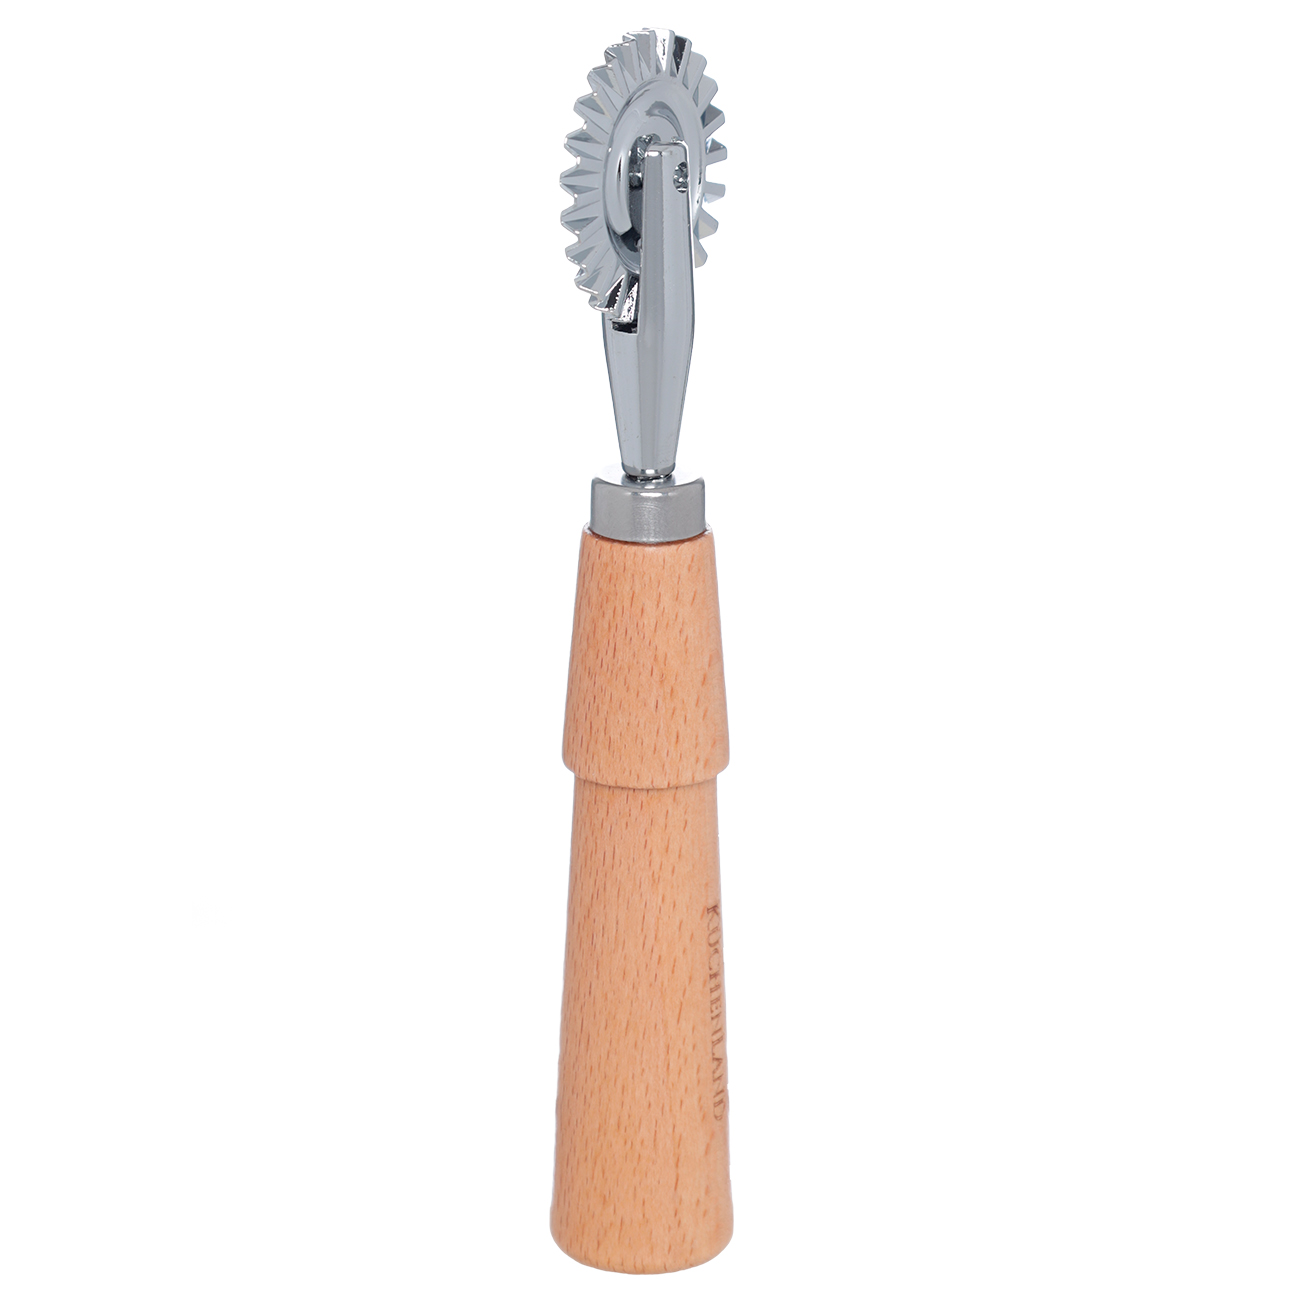 Нож для фигурной нарезки теста, 16 см, с волнистым лезвием, сталь/дерево, Wood kitchen изображение № 2